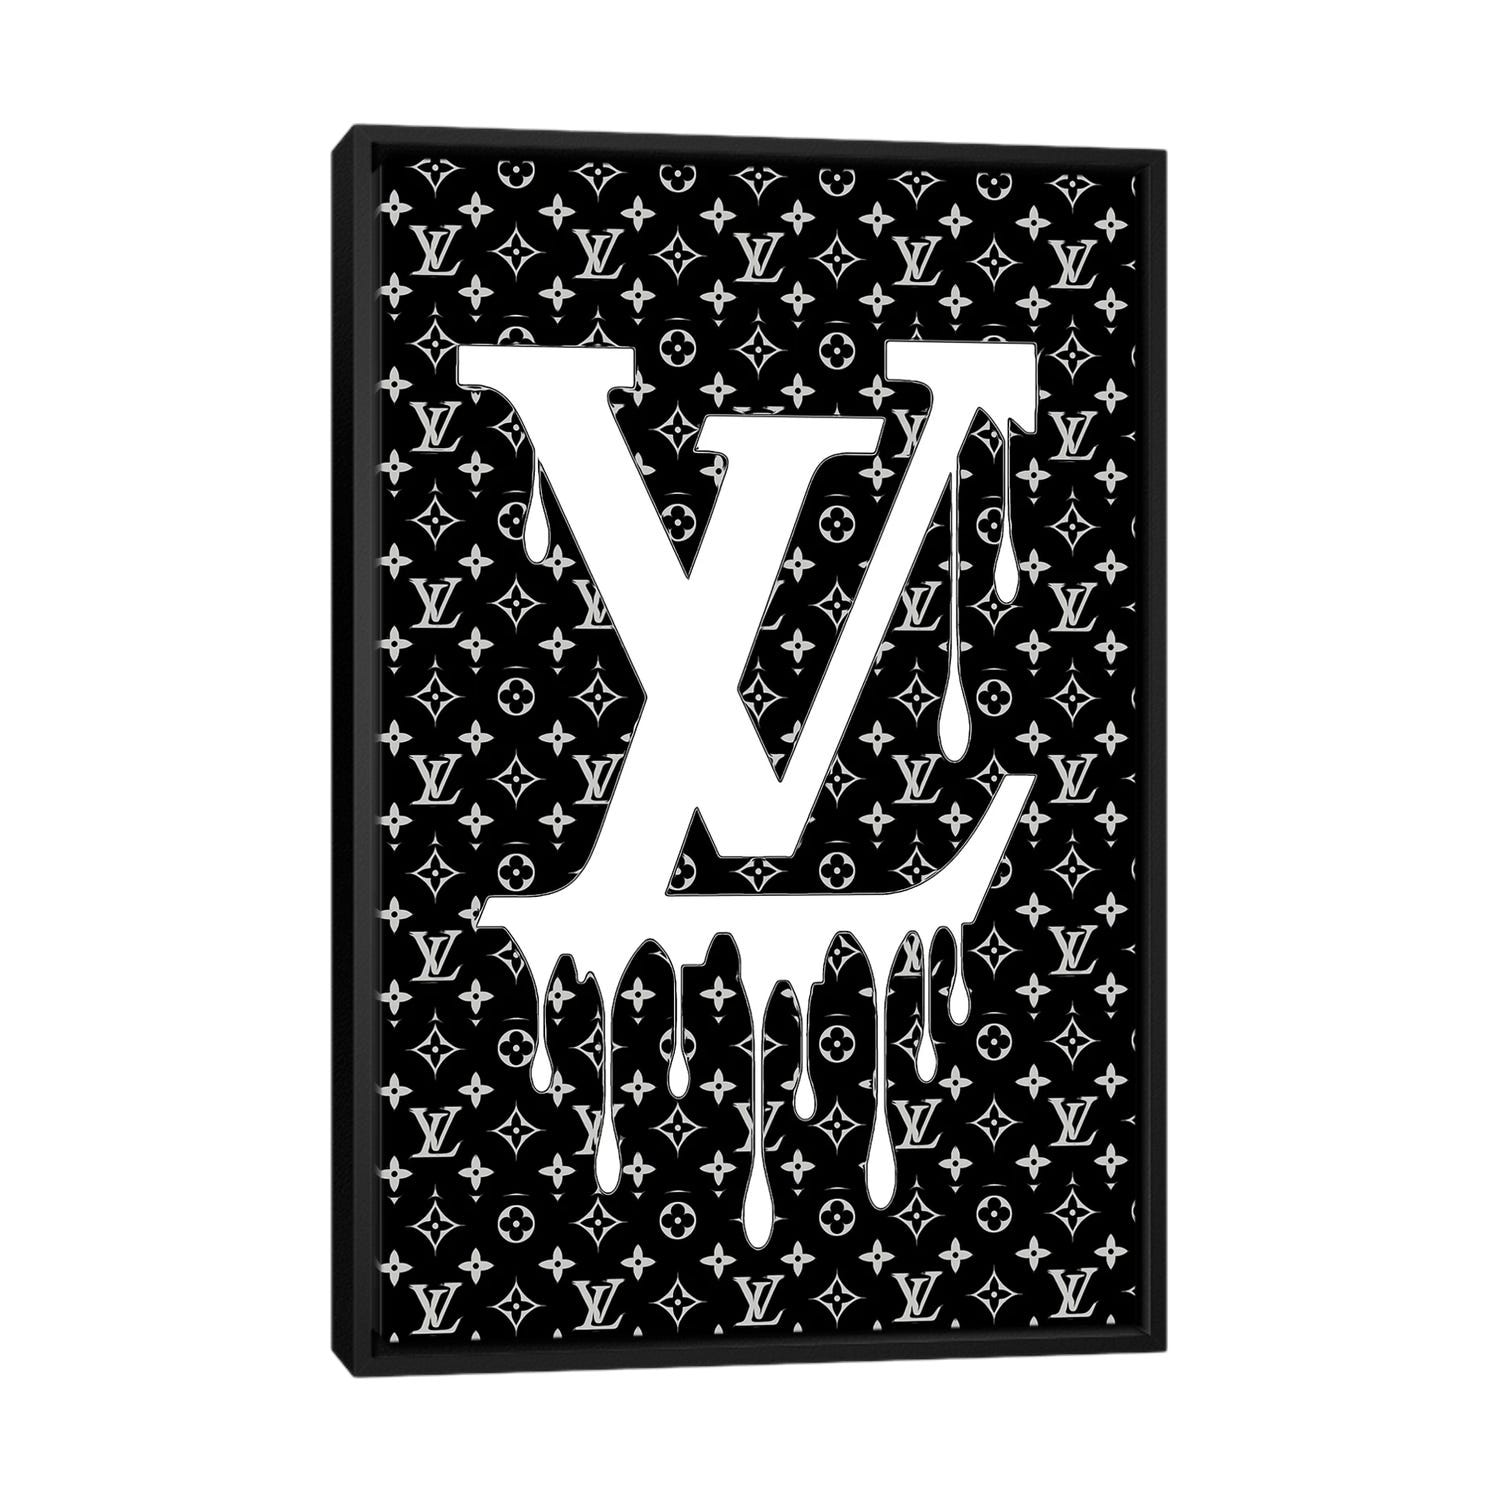 Julie Schreiber Canvas Prints - Louis Vuitton Logo Pop Art ( Fashion > Fashion Brands > Louis Vuitton art) - 26x18 in